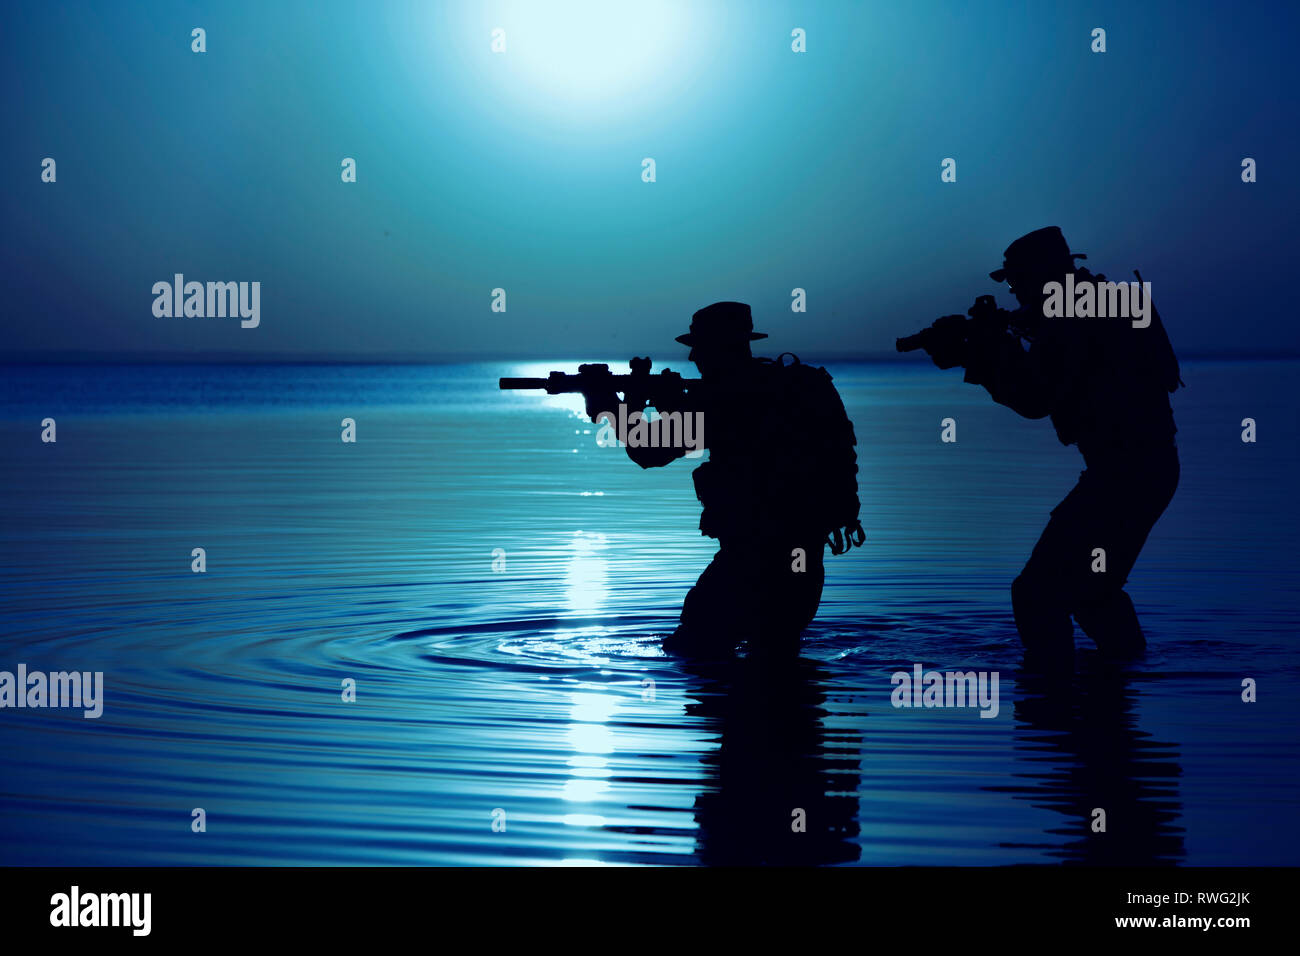 Armee Soldat Silhouette Stockfoto